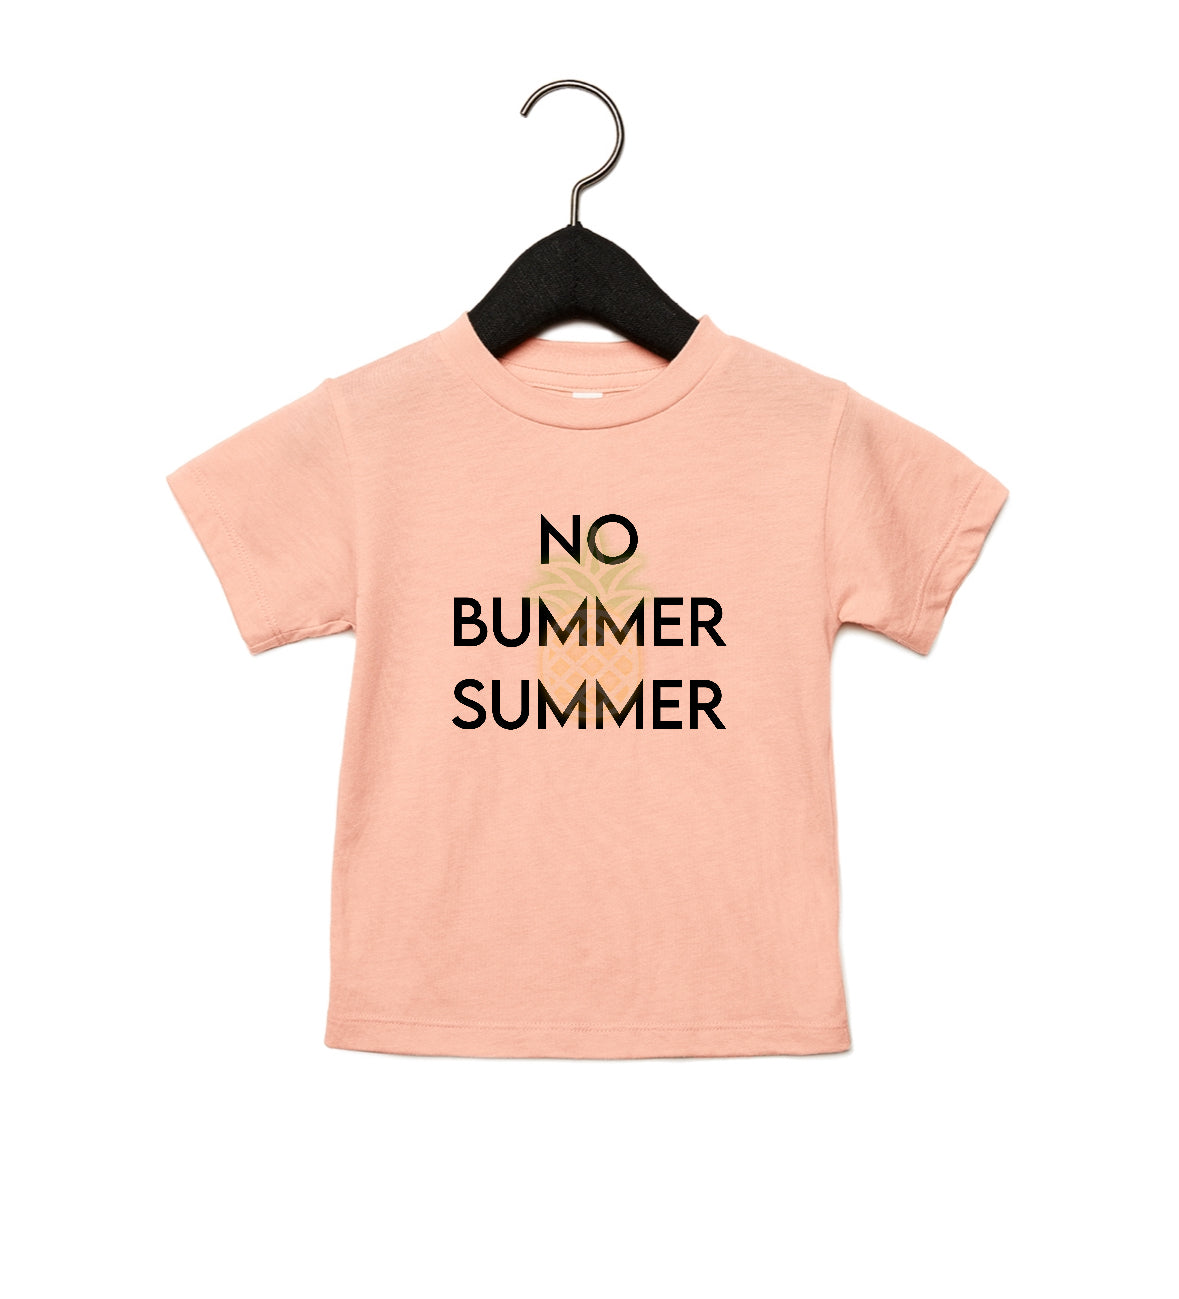 No bummer summer